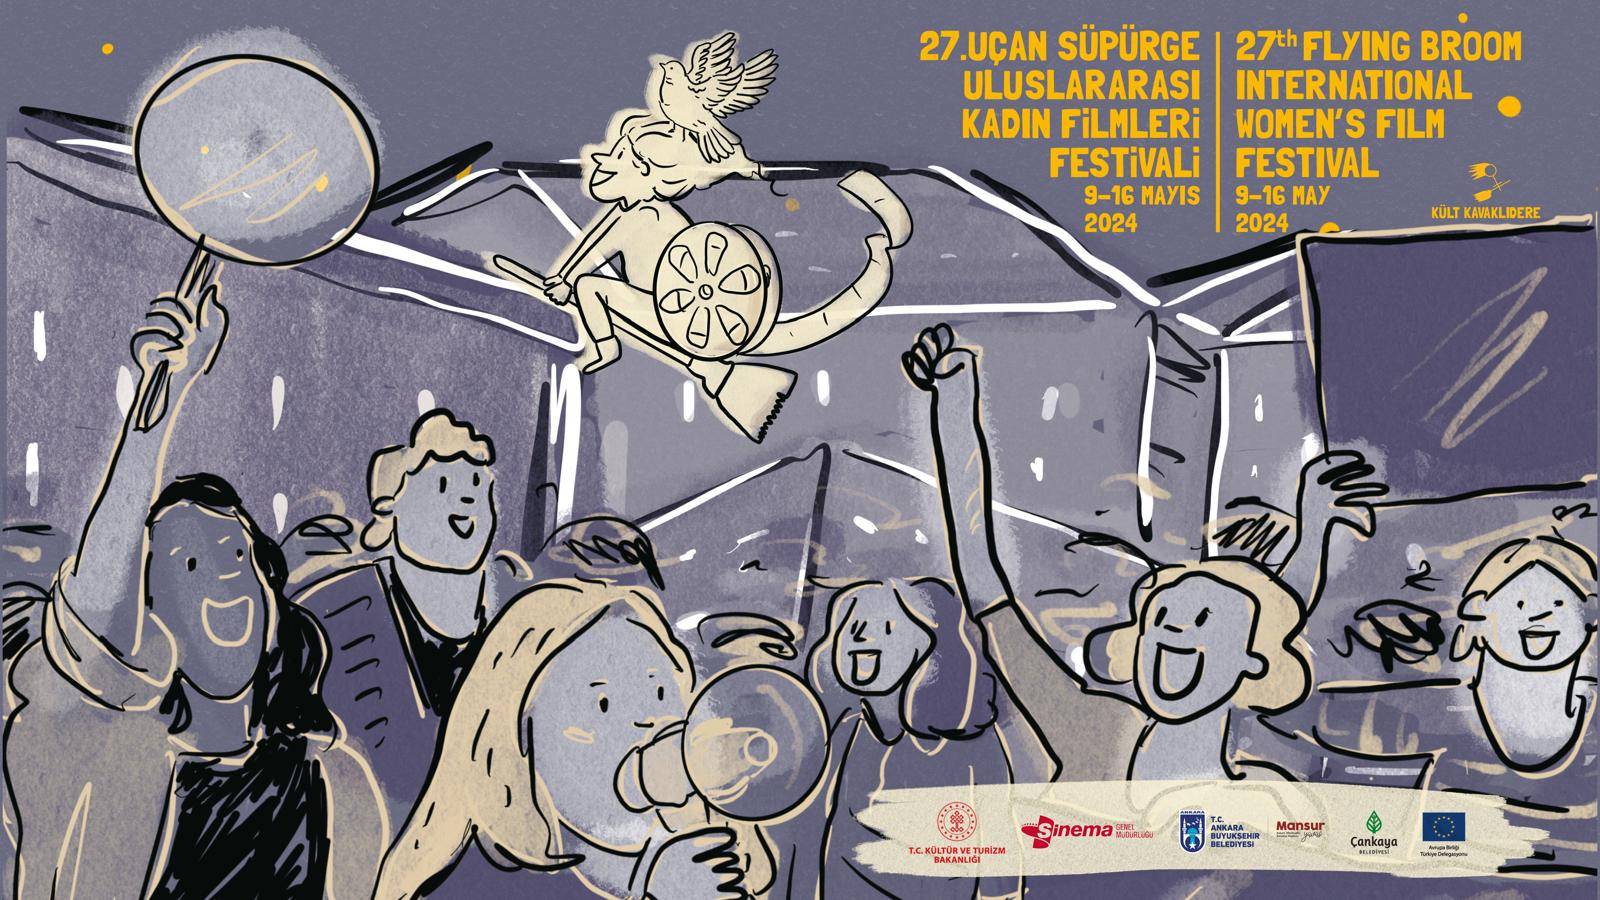 27 Uçan Süpürge Uluslararası Kadın Filmleri Festivali'nin afişi belli oldu